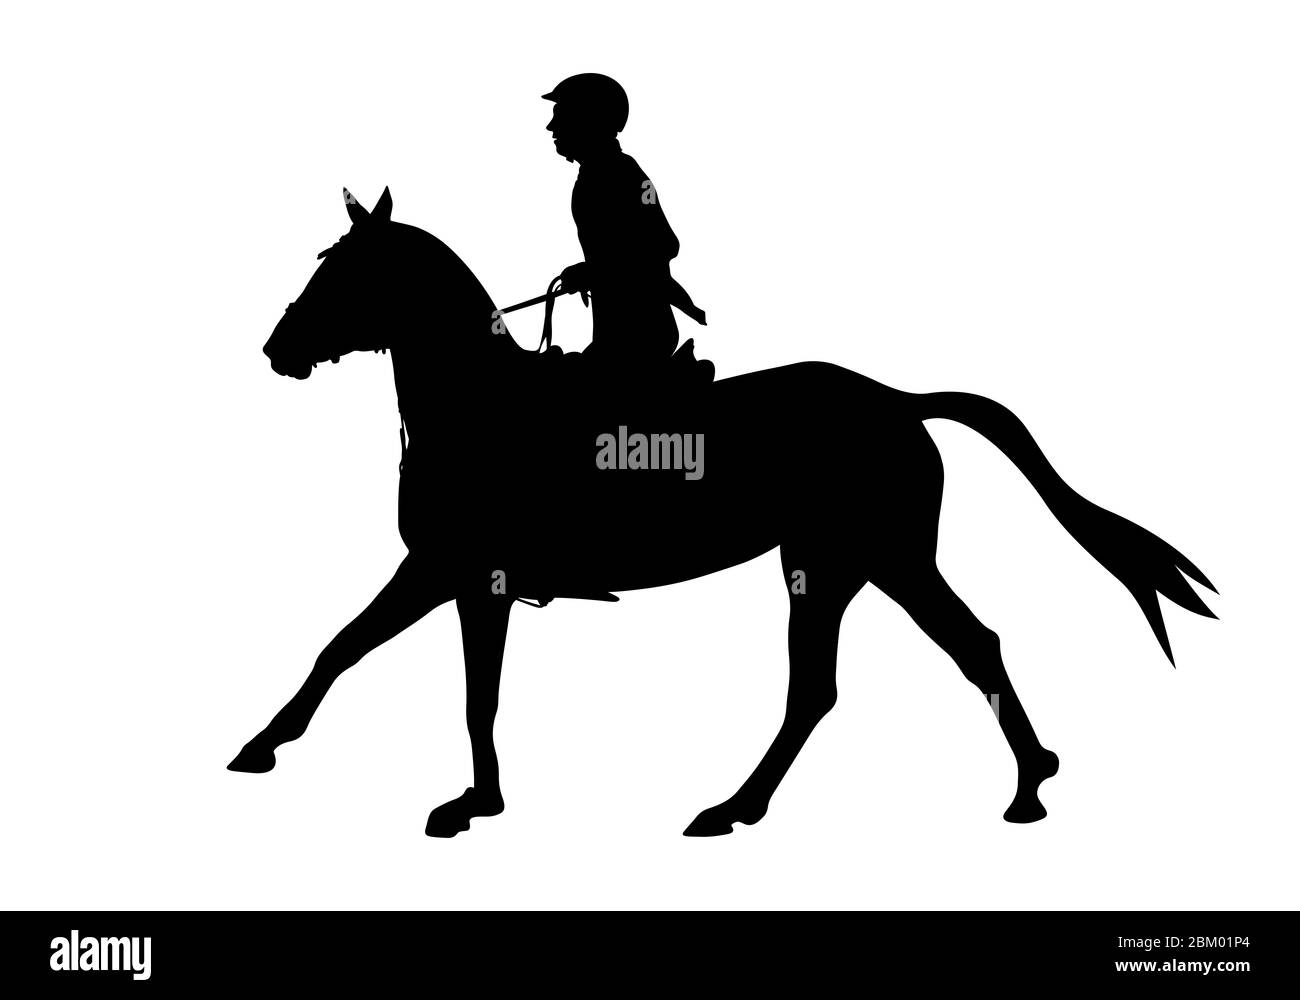 montrez la femme sautant sur une silhouette noire de cheval Banque D'Images